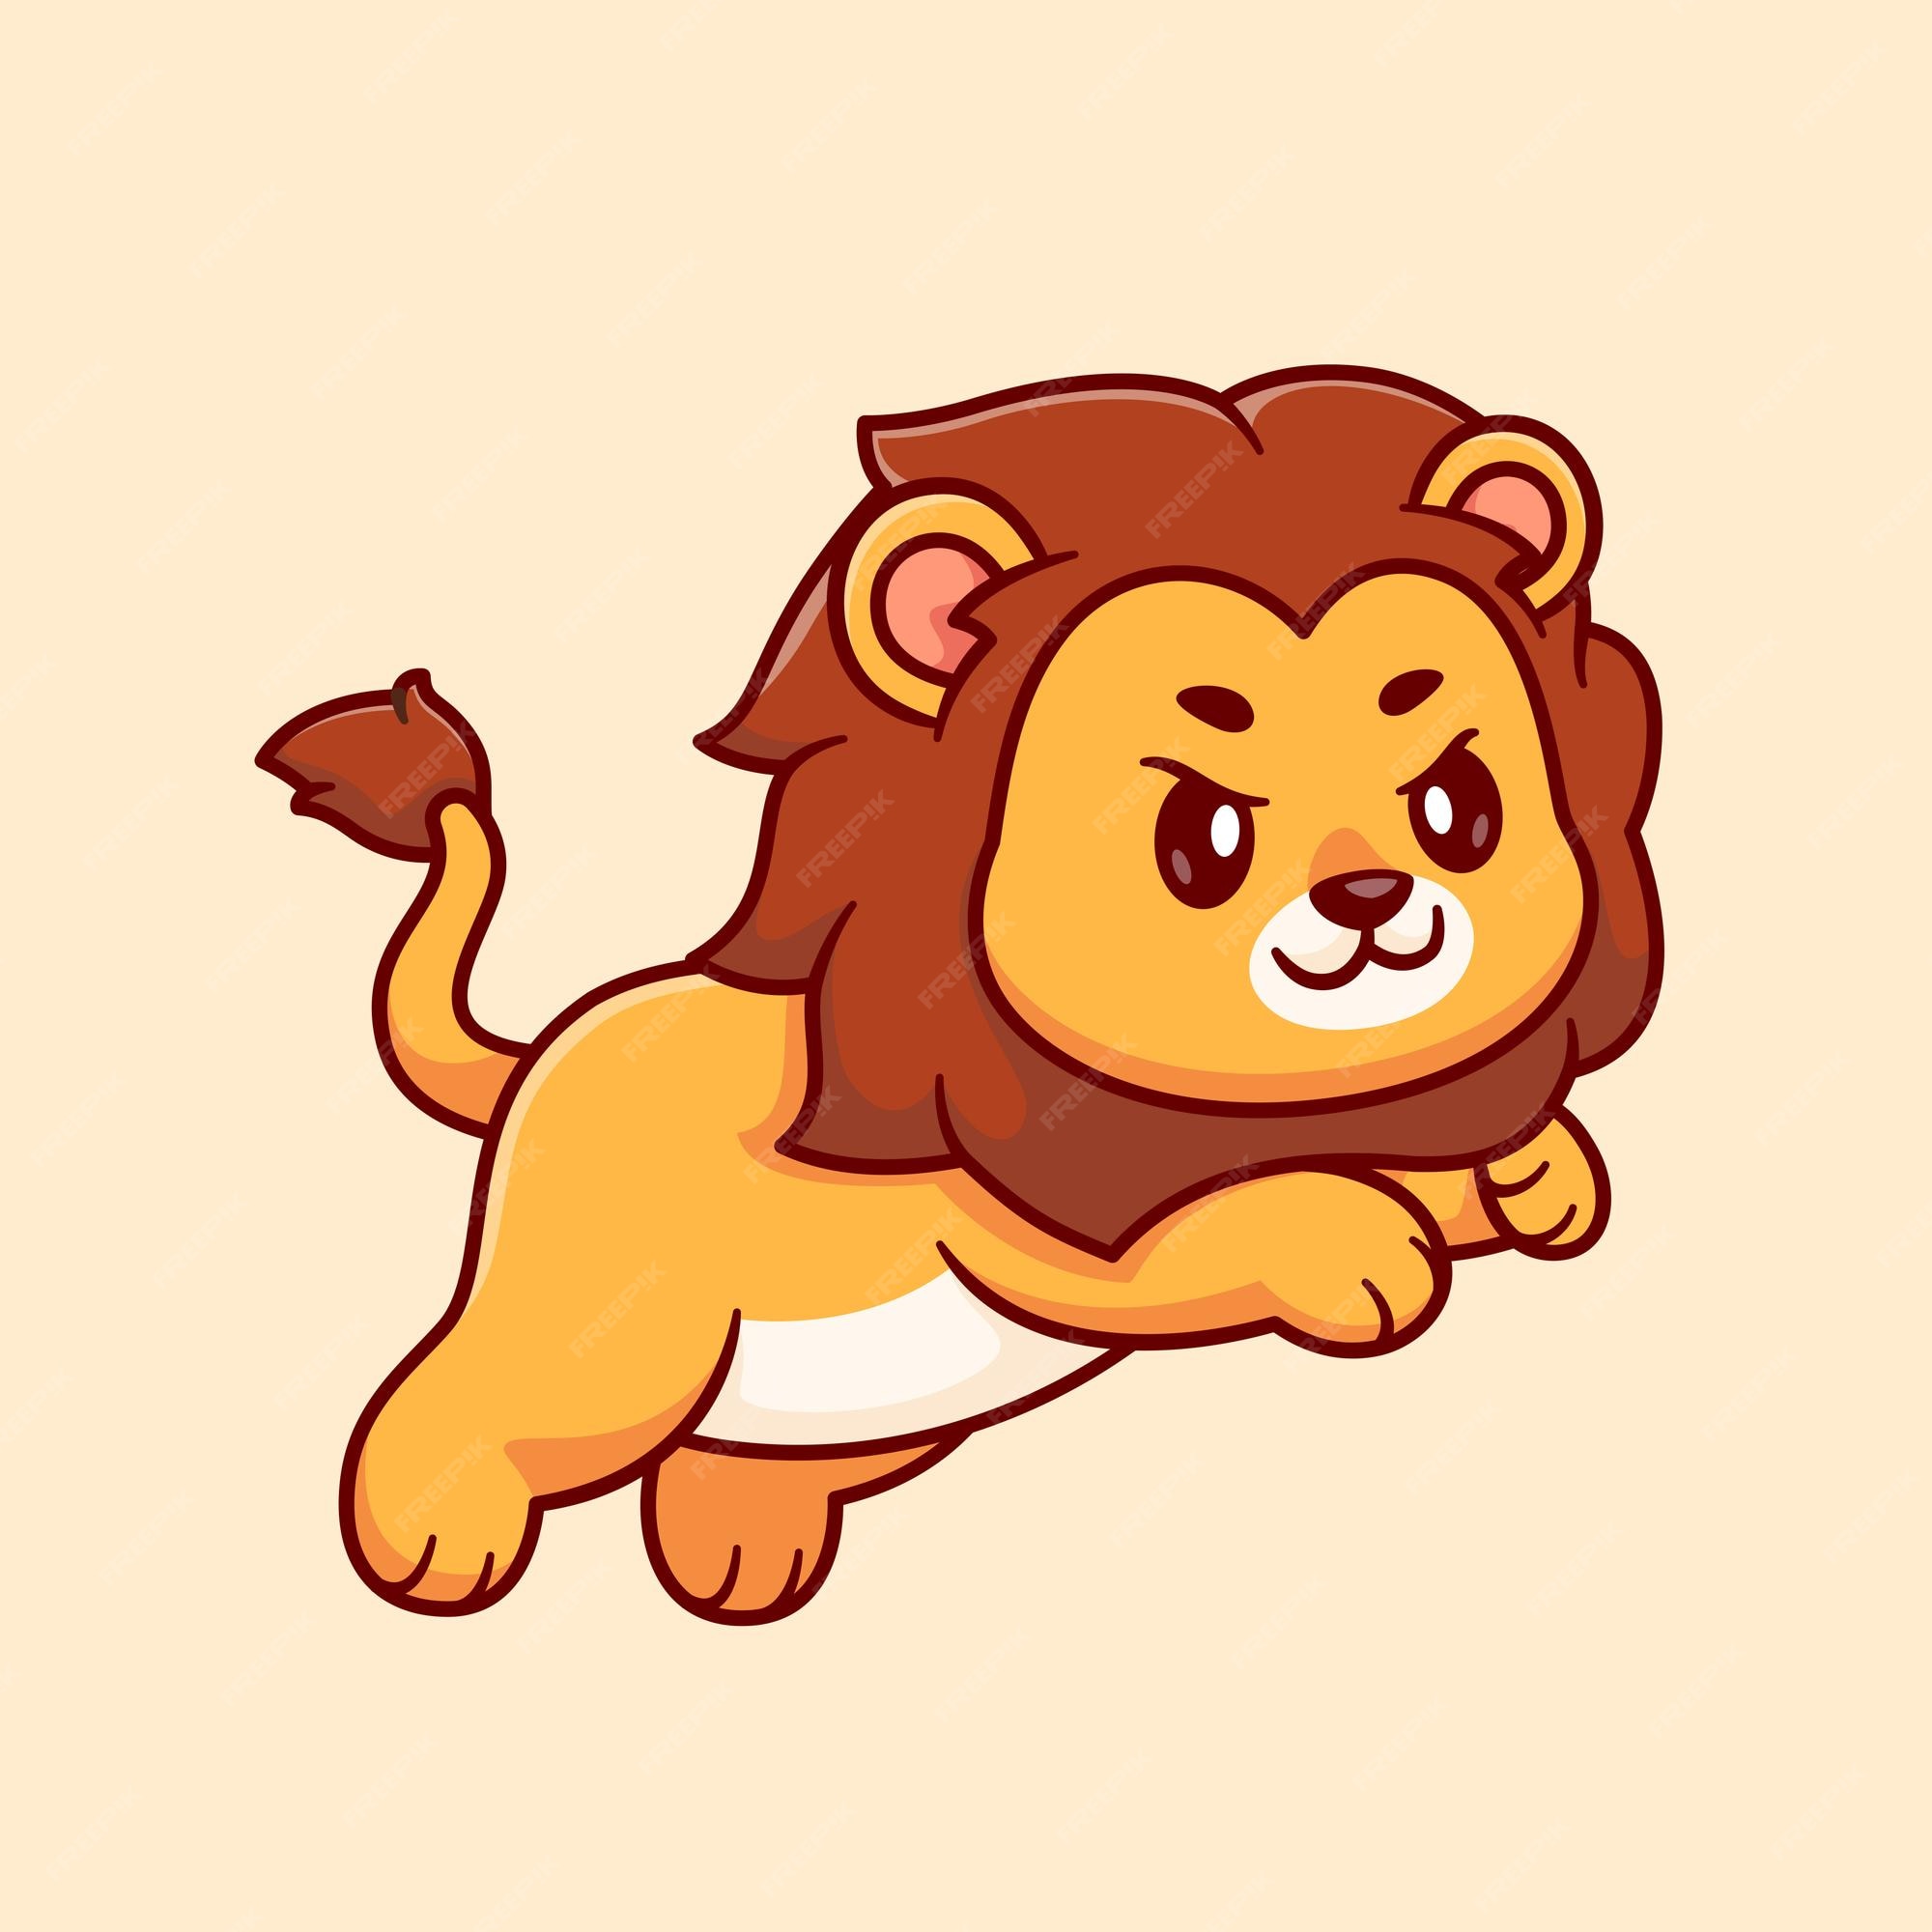 Bạn đang tìm kiếm biểu tượng vector chibi sư tử nhảy cute để đóng dấu vừa tiện lợi lại vừa dễ thương? Chúng tôi sẽ cung cấp cho bạn những hình ảnh chibi sư tử đang nhảy múa như thật để bạn có thể sử dụng cho mọi mục đích mà bạn muốn. Hãy truy cập ngay để có được những biểu tượng chibi sư tử đáng yêu này!